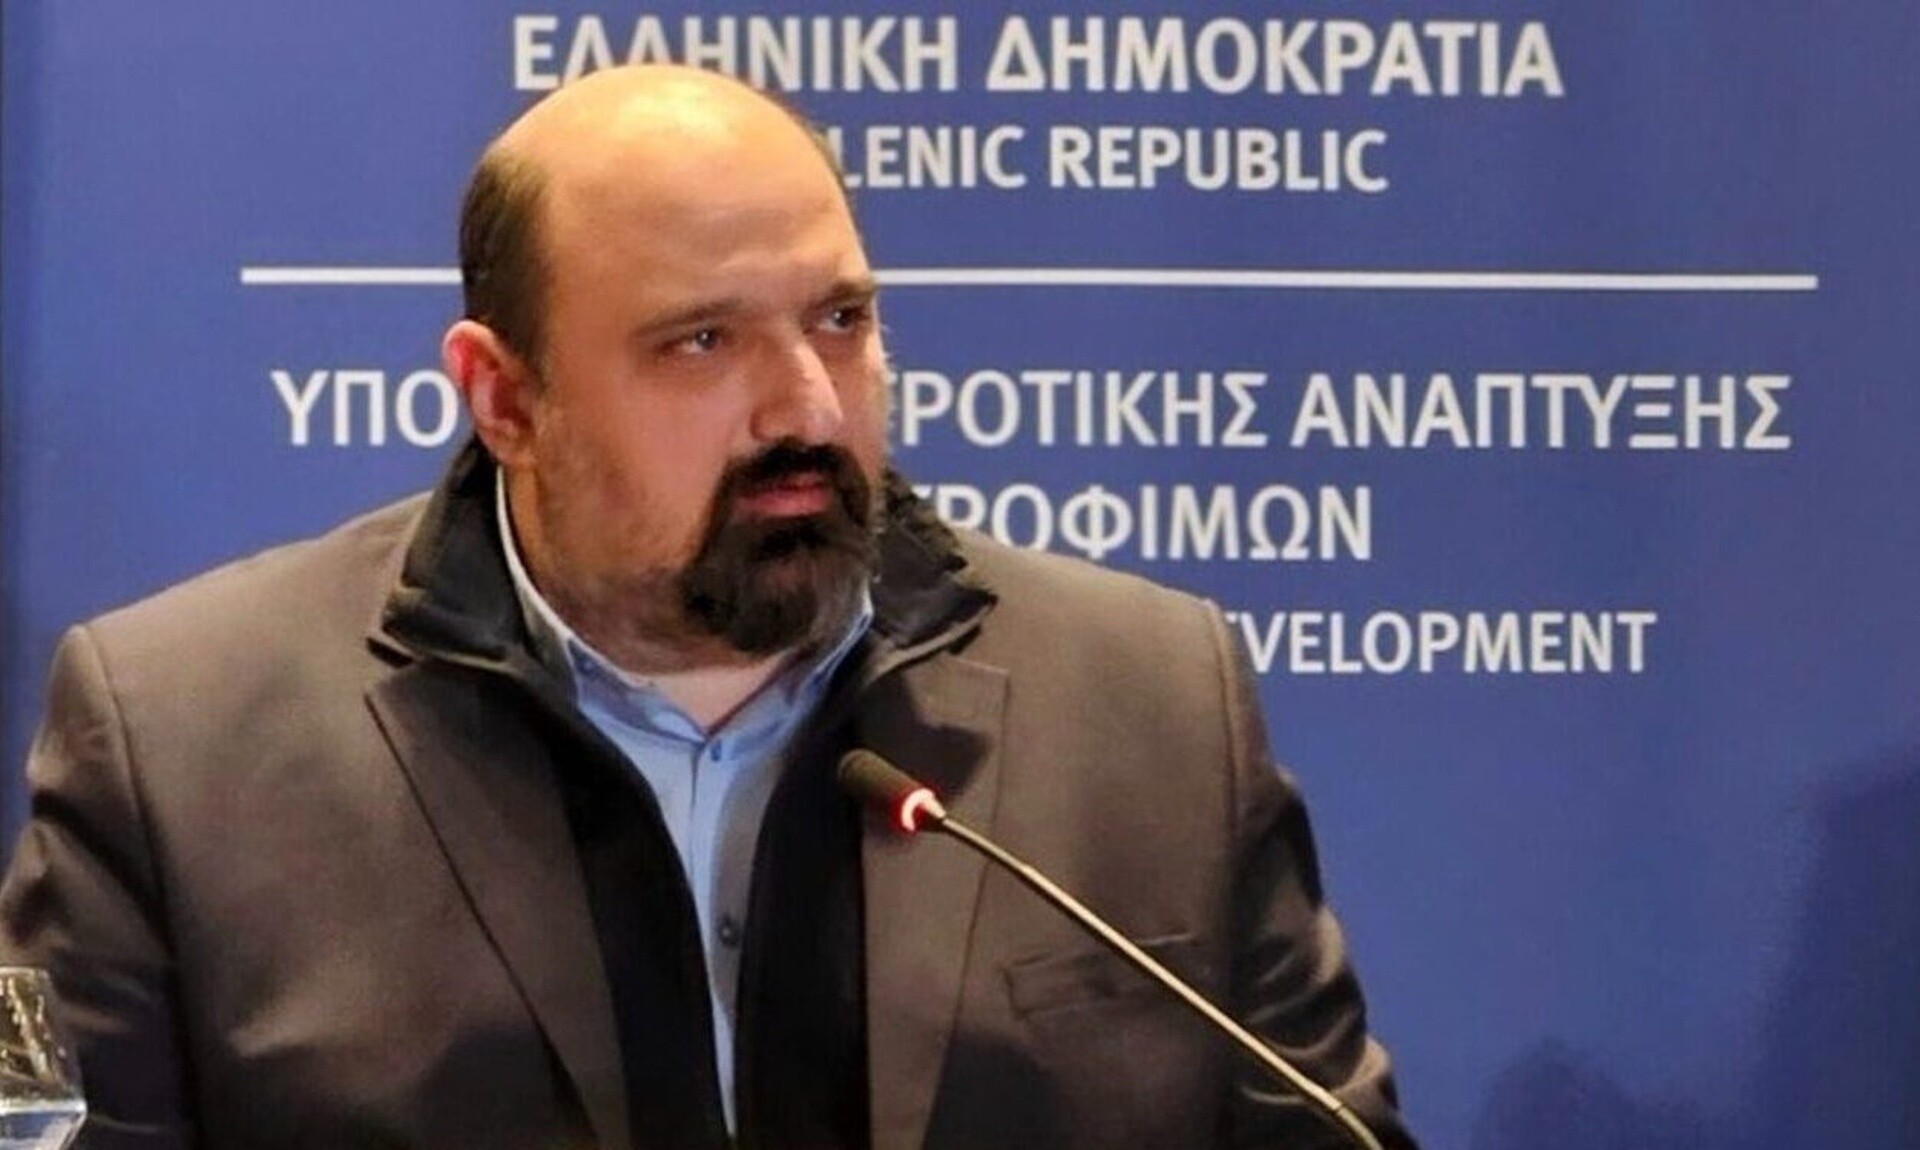 Τριαντόπουλος: Προωθούμε τριλογία νομοθετικών πρωτοβουλιών για την ολοκλήρωση της μεταρρύθμισης